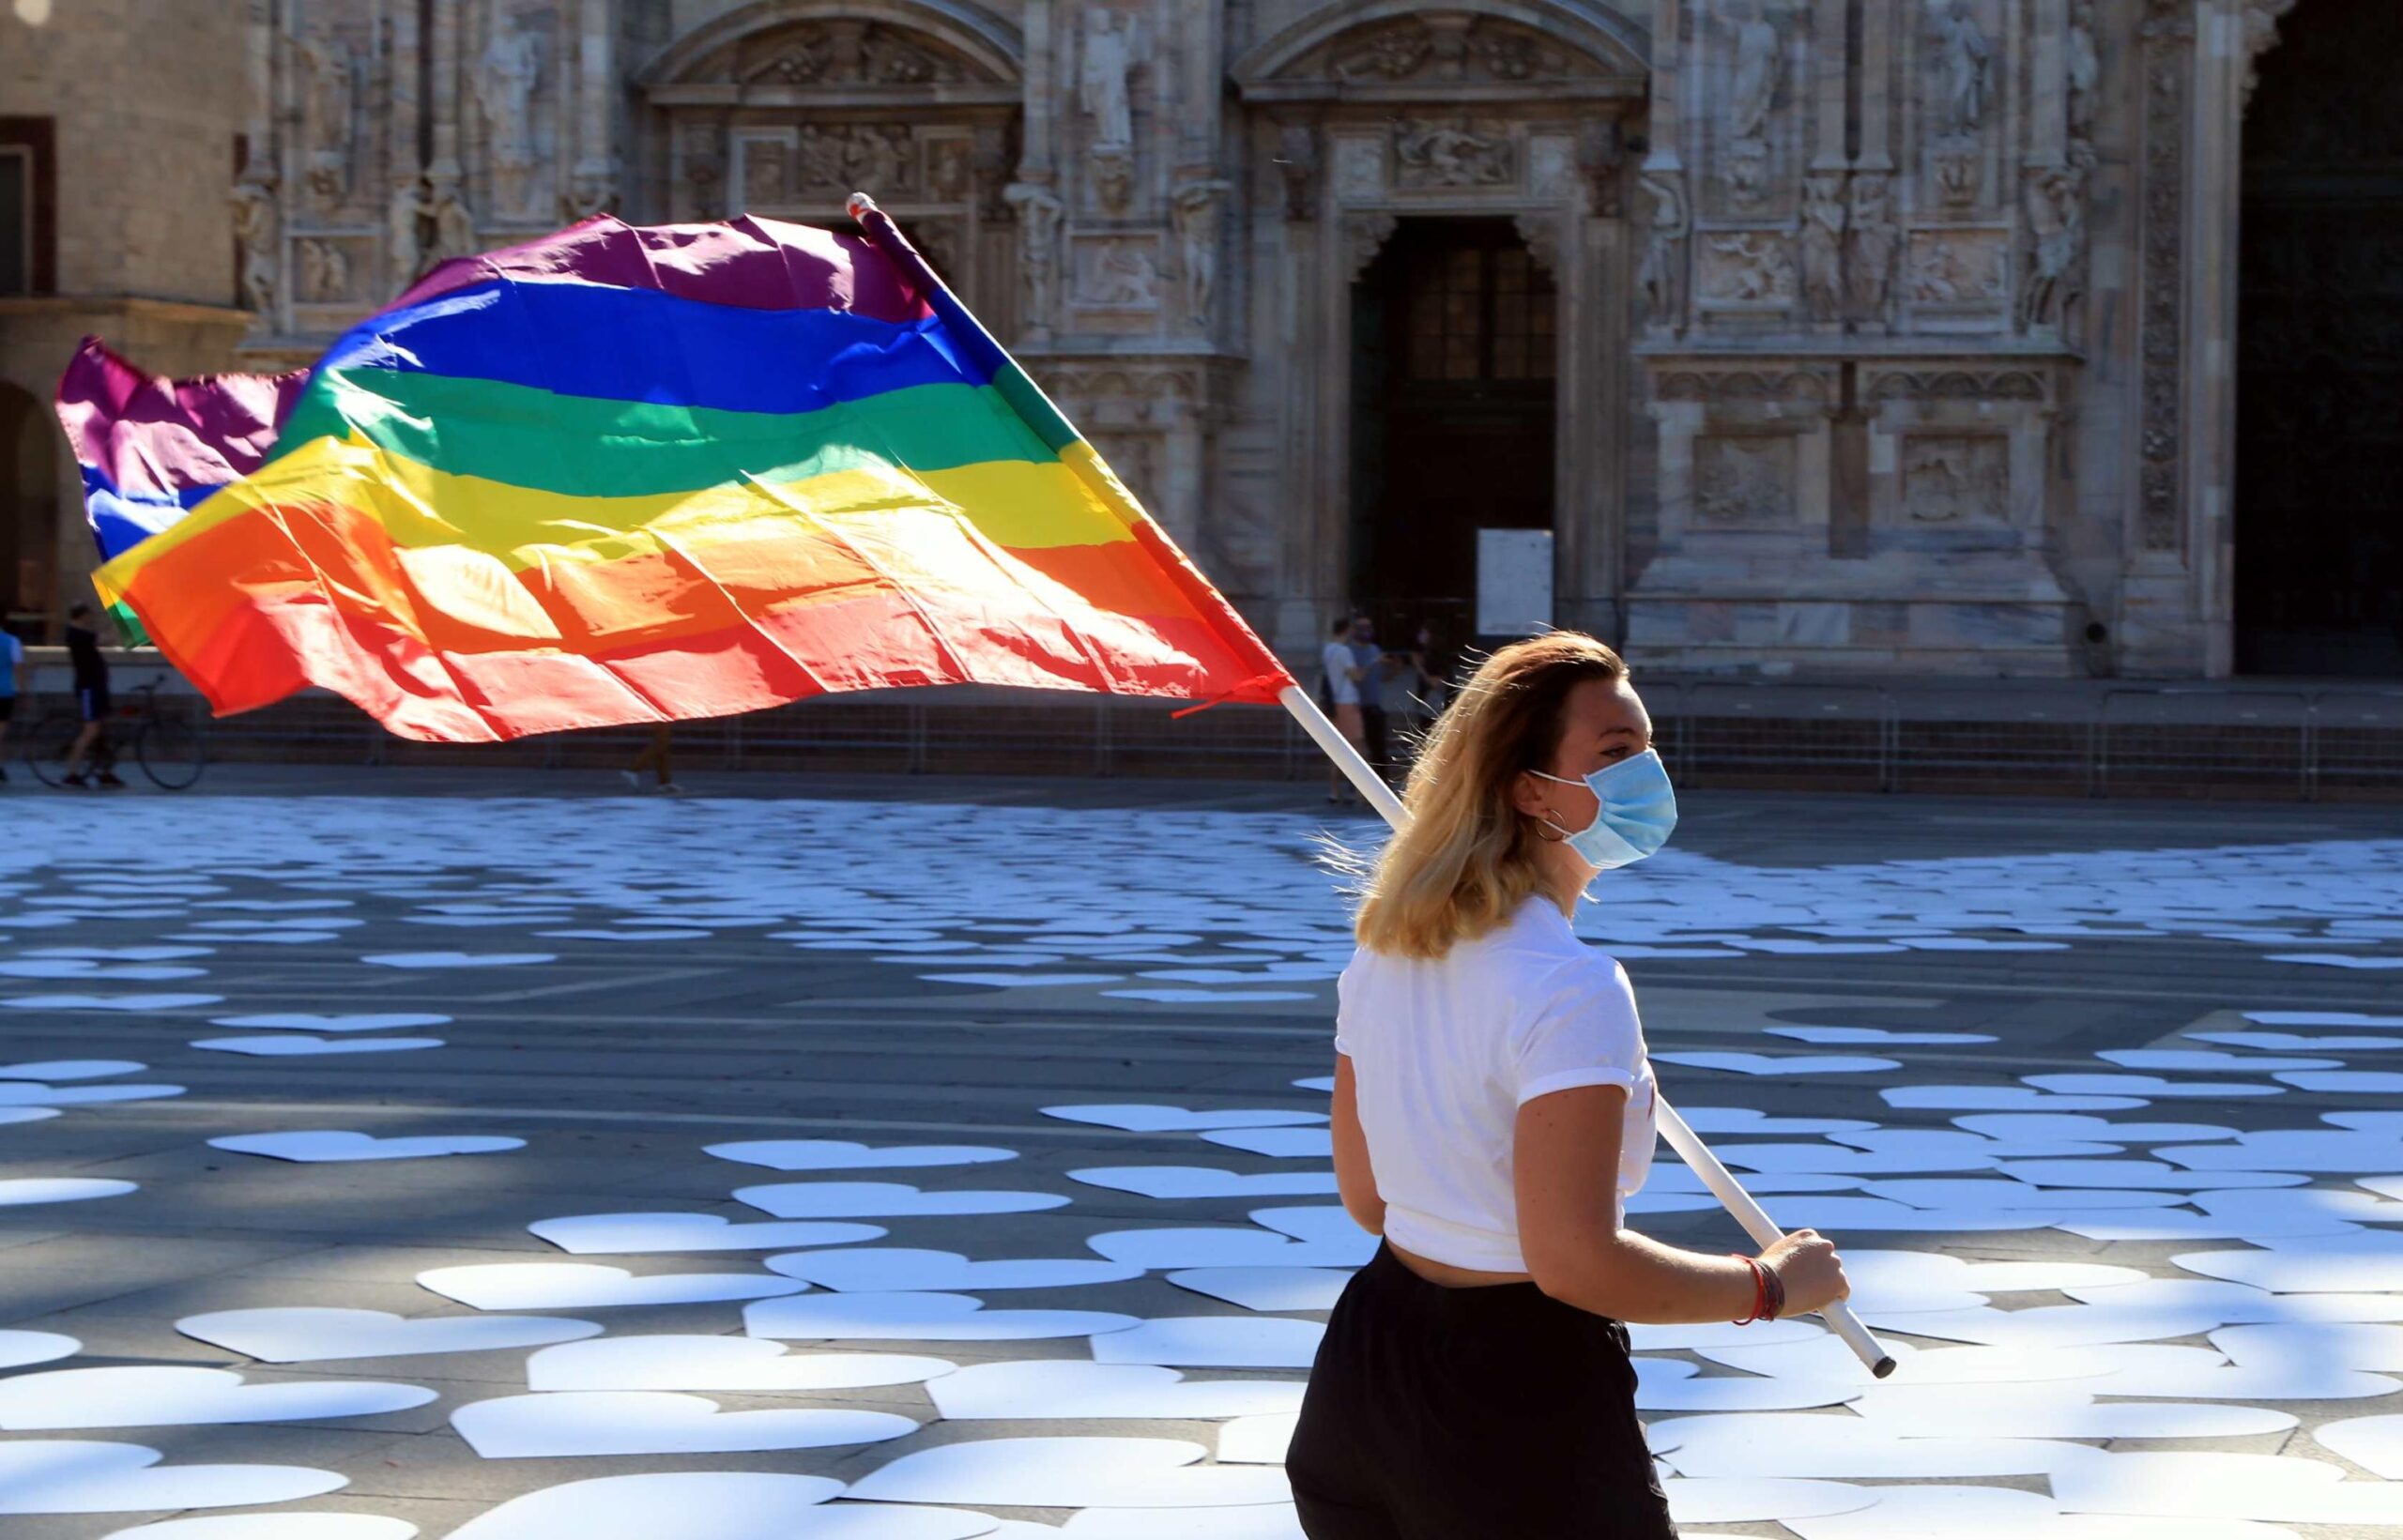 ESCLUSIVA  Famiglie arcobaleno, flashmob a Genova. Parla Donatella Siringo (Agedo): “In ballo i diritti”